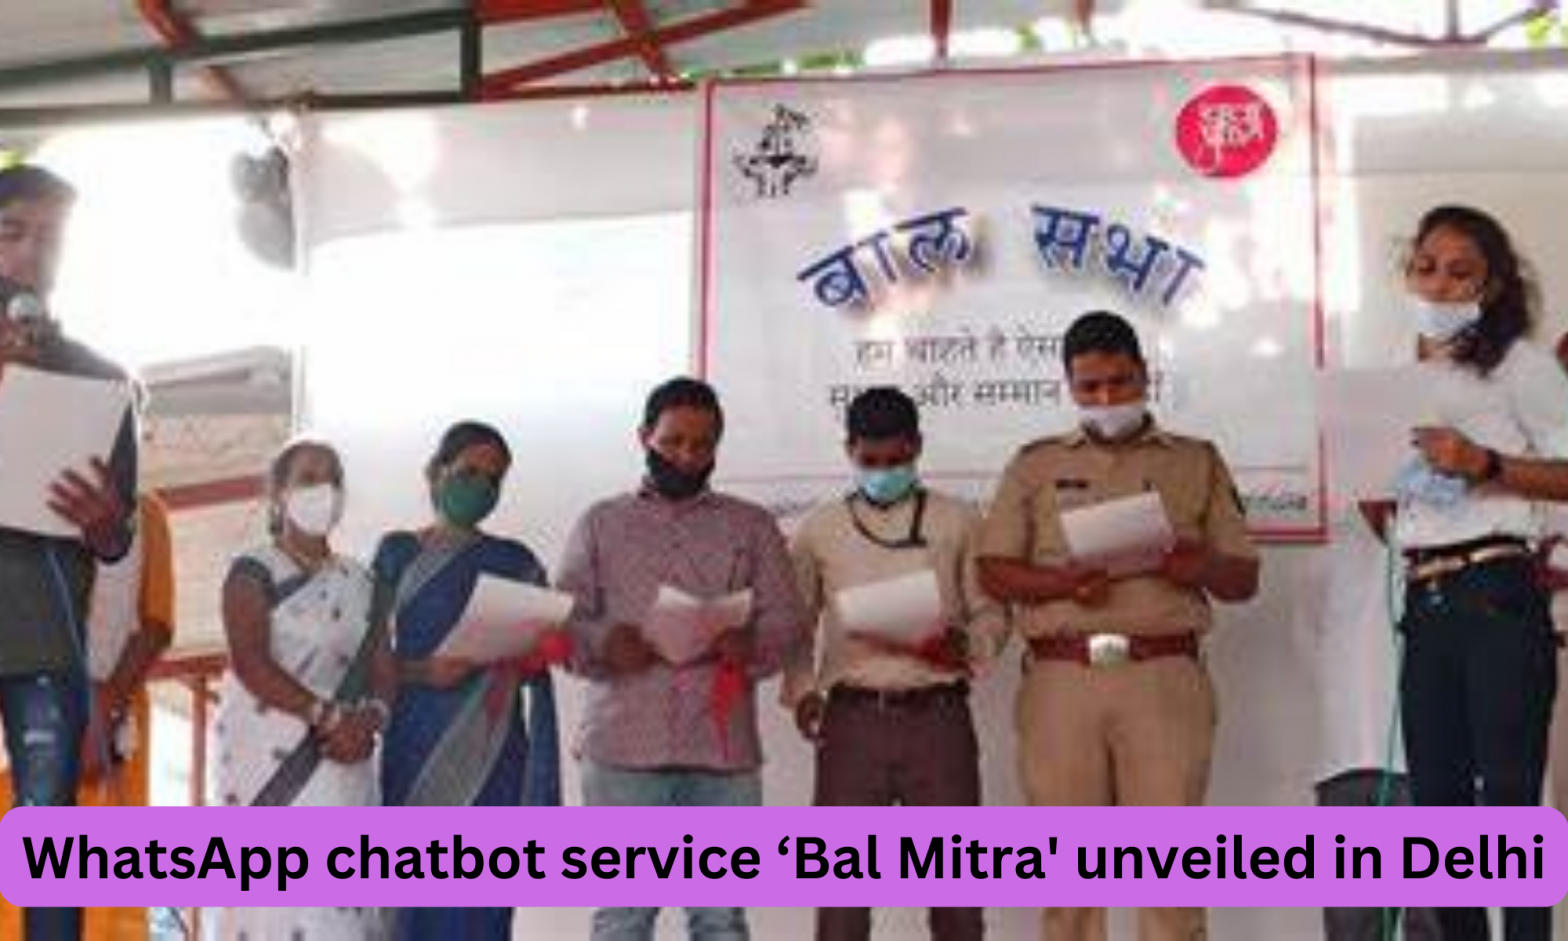 Delhi child rights body unveils WhatsApp chatbot service ‘Bal Mitra’